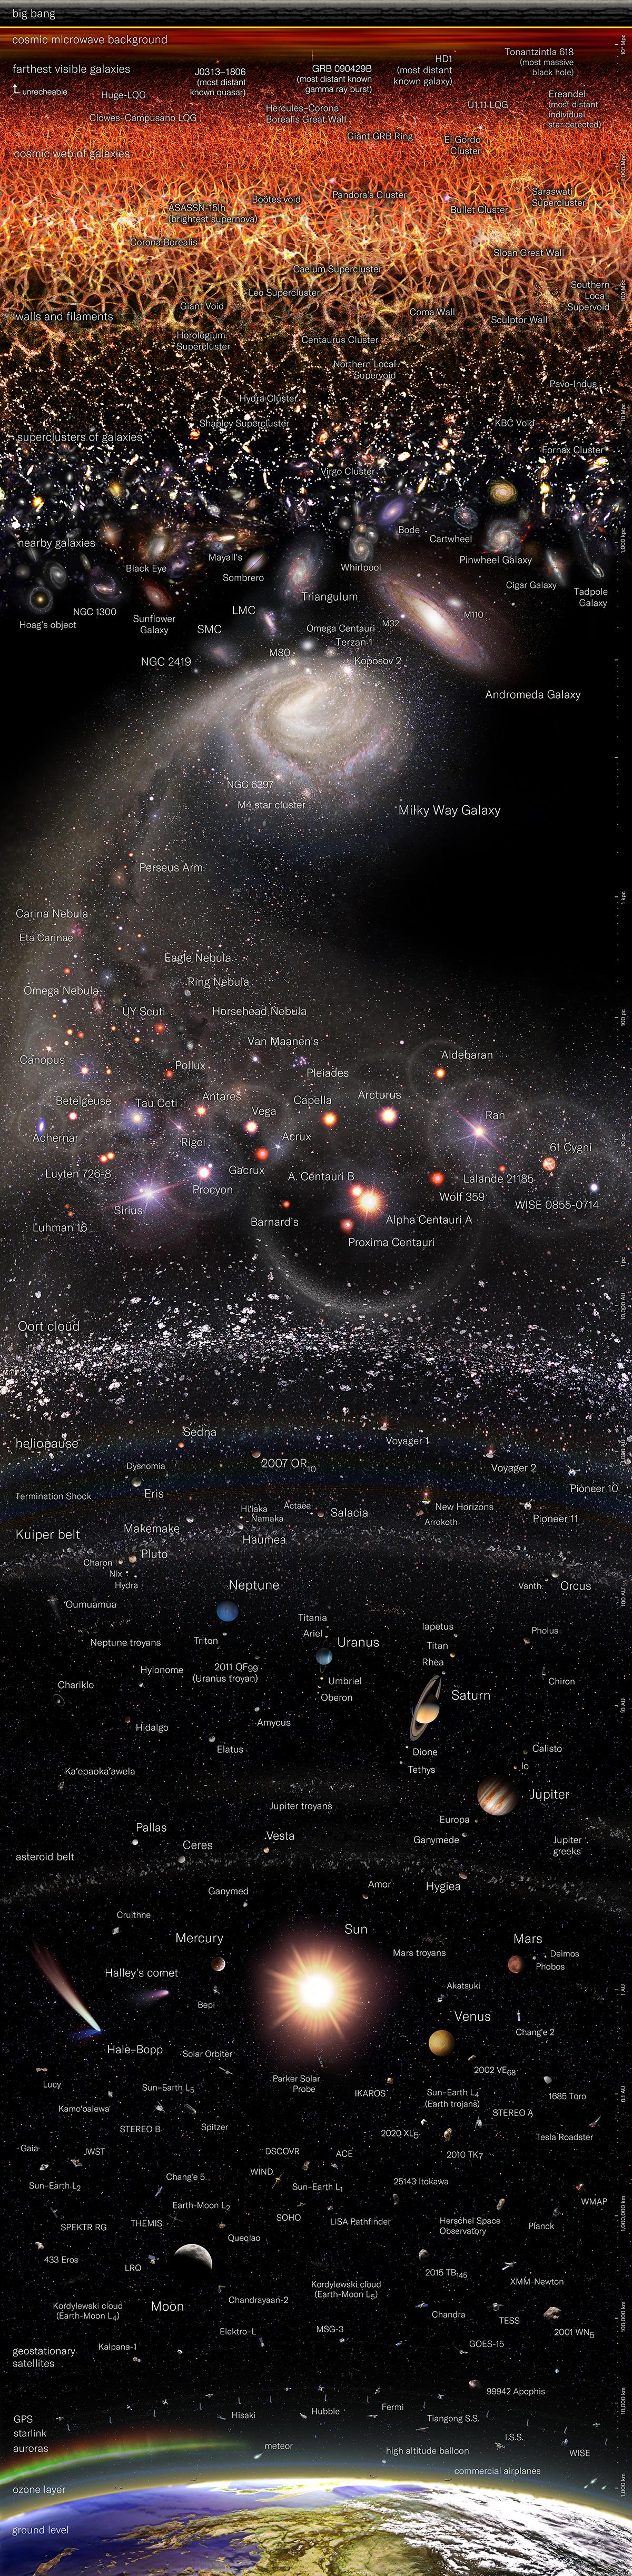 وجهة نظر لوغاريتمية للتاريخ الكوني